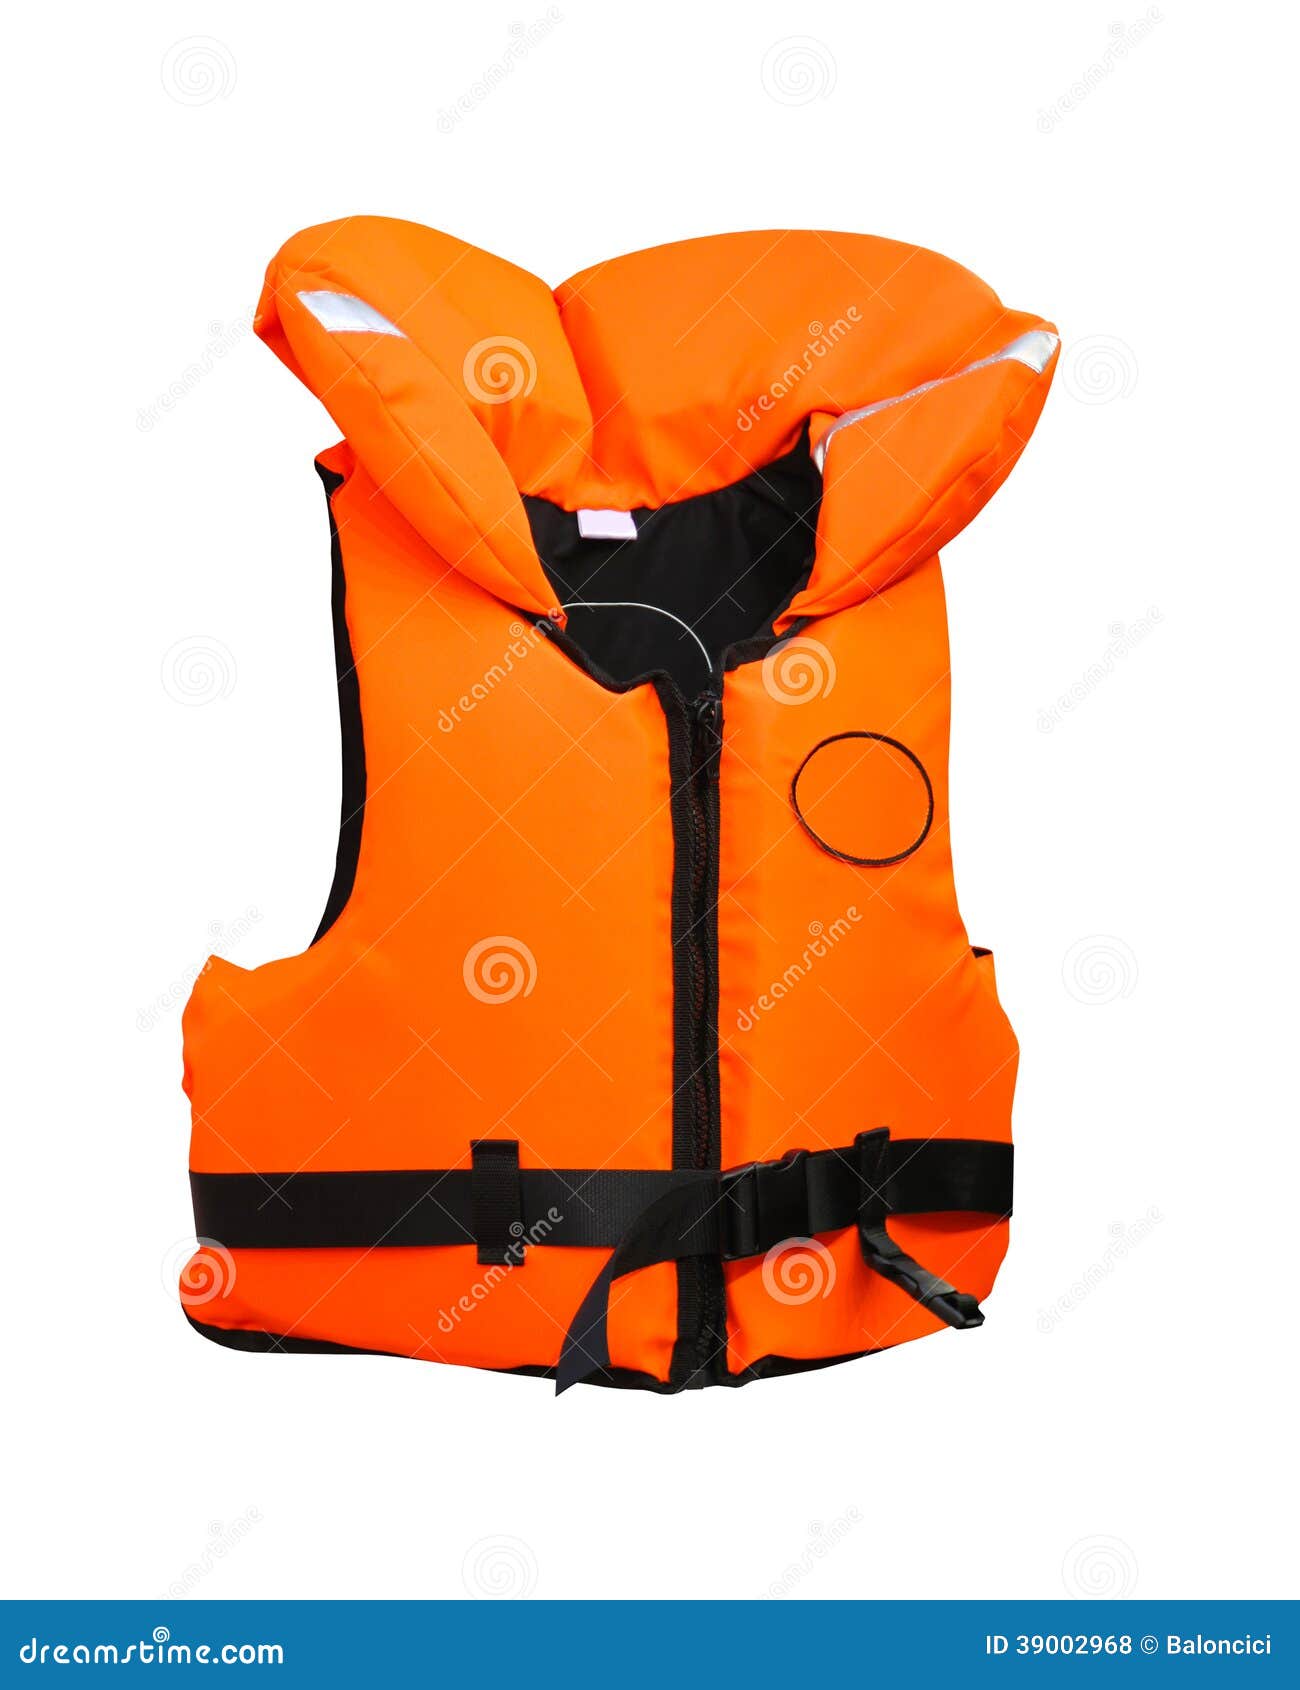 Life vest stock photo. Image of help, lifesaver, buoy - 39002968